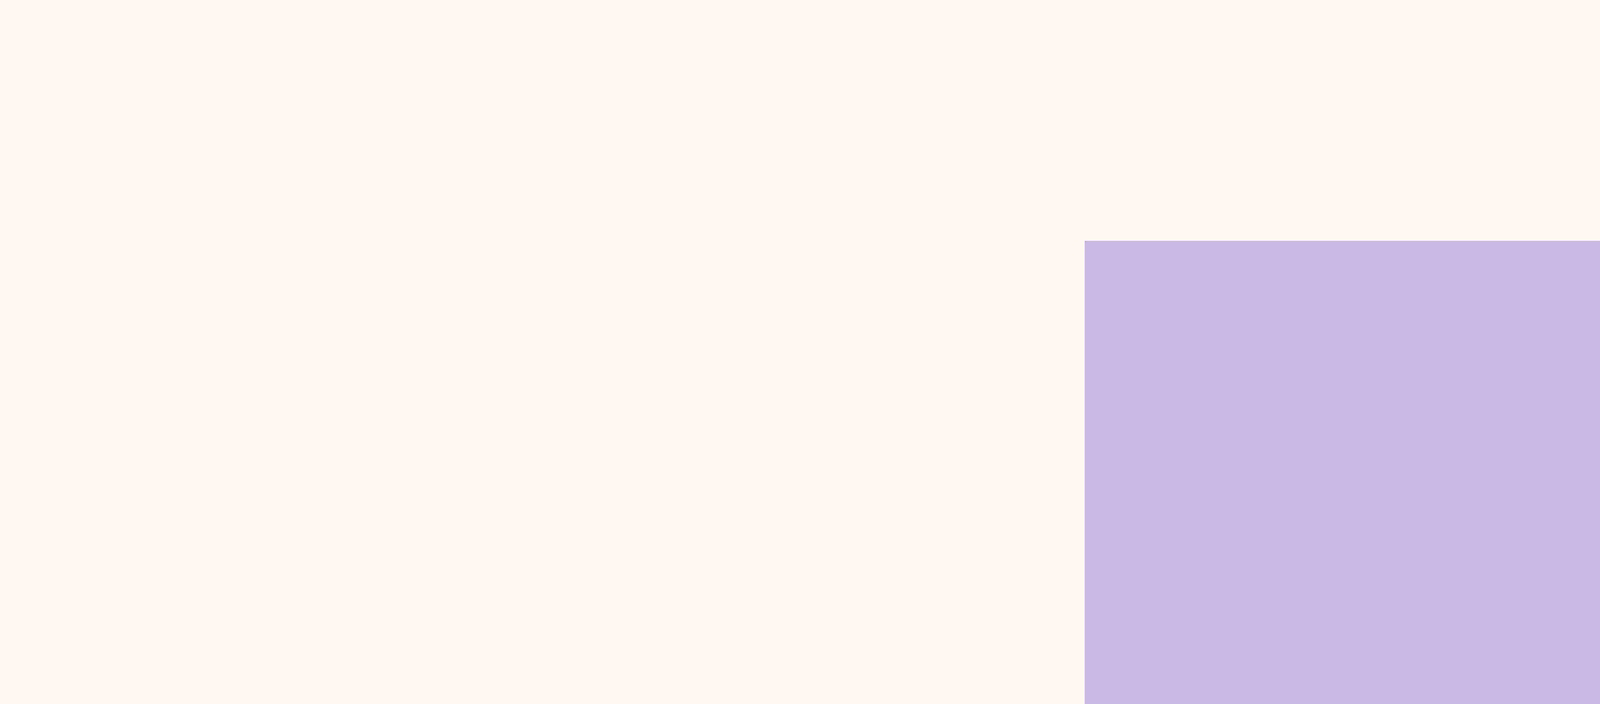 Un immagine di quadrato viola e bianco.